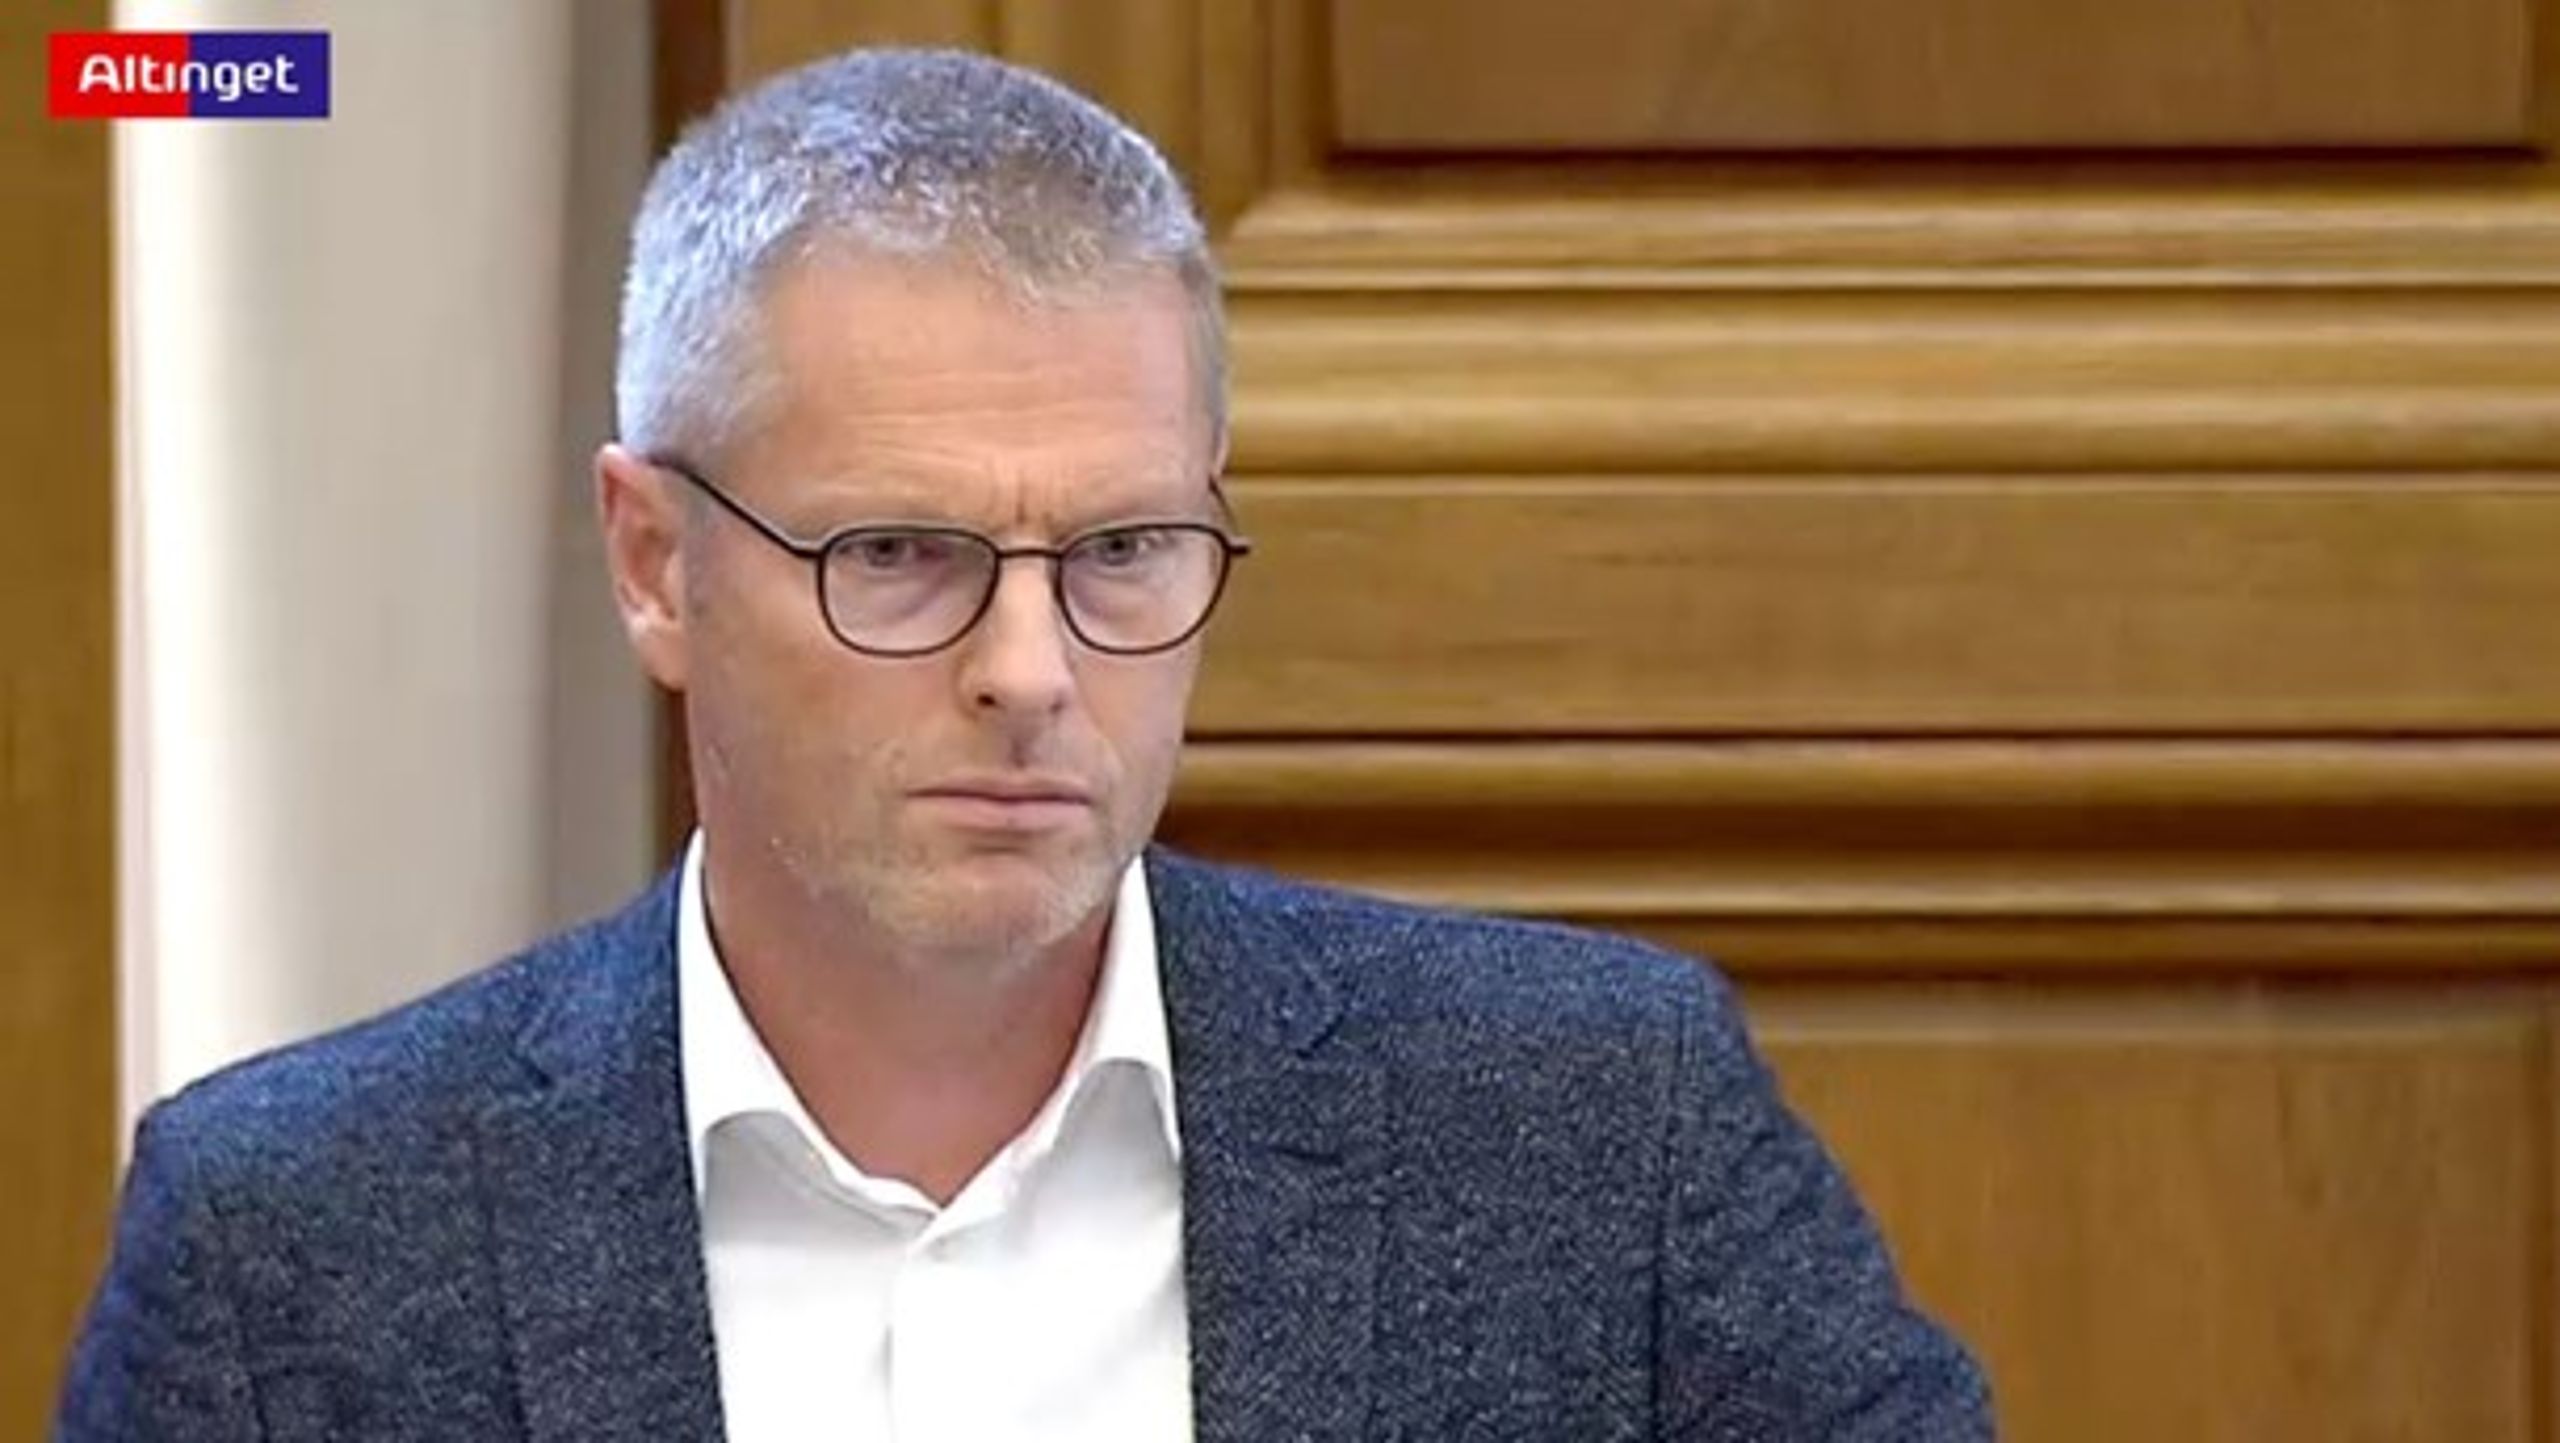 Flemming Møller Mortensen (S) erkender, at integrationsindsatsen er prioriteret over sundhedspolitikken i partiets opbakning til lovforslaget.